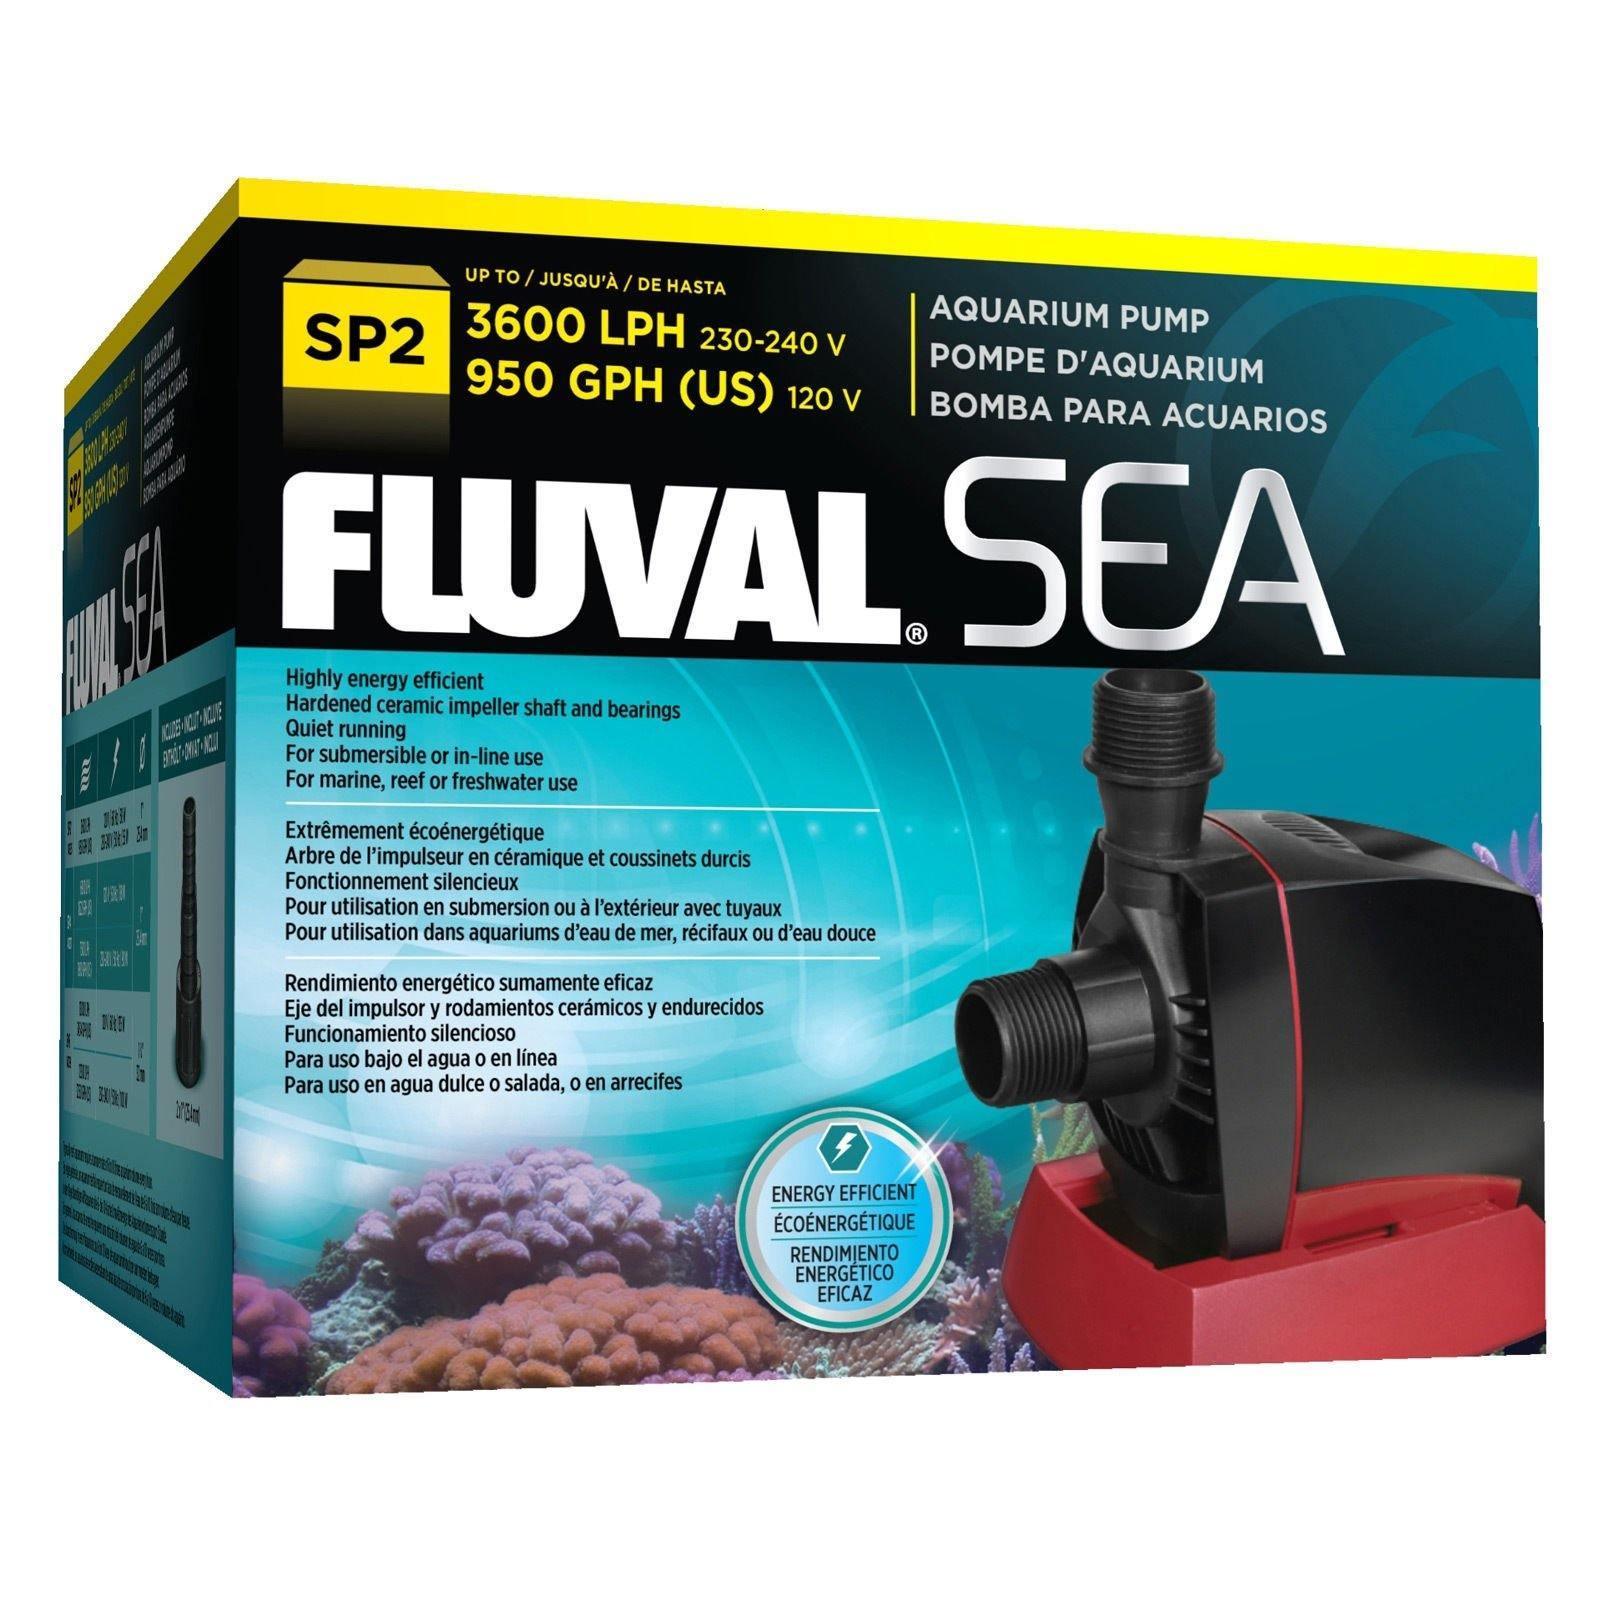 Fluval Sea Aquarium Sump Pump SP2 (3770 lph)